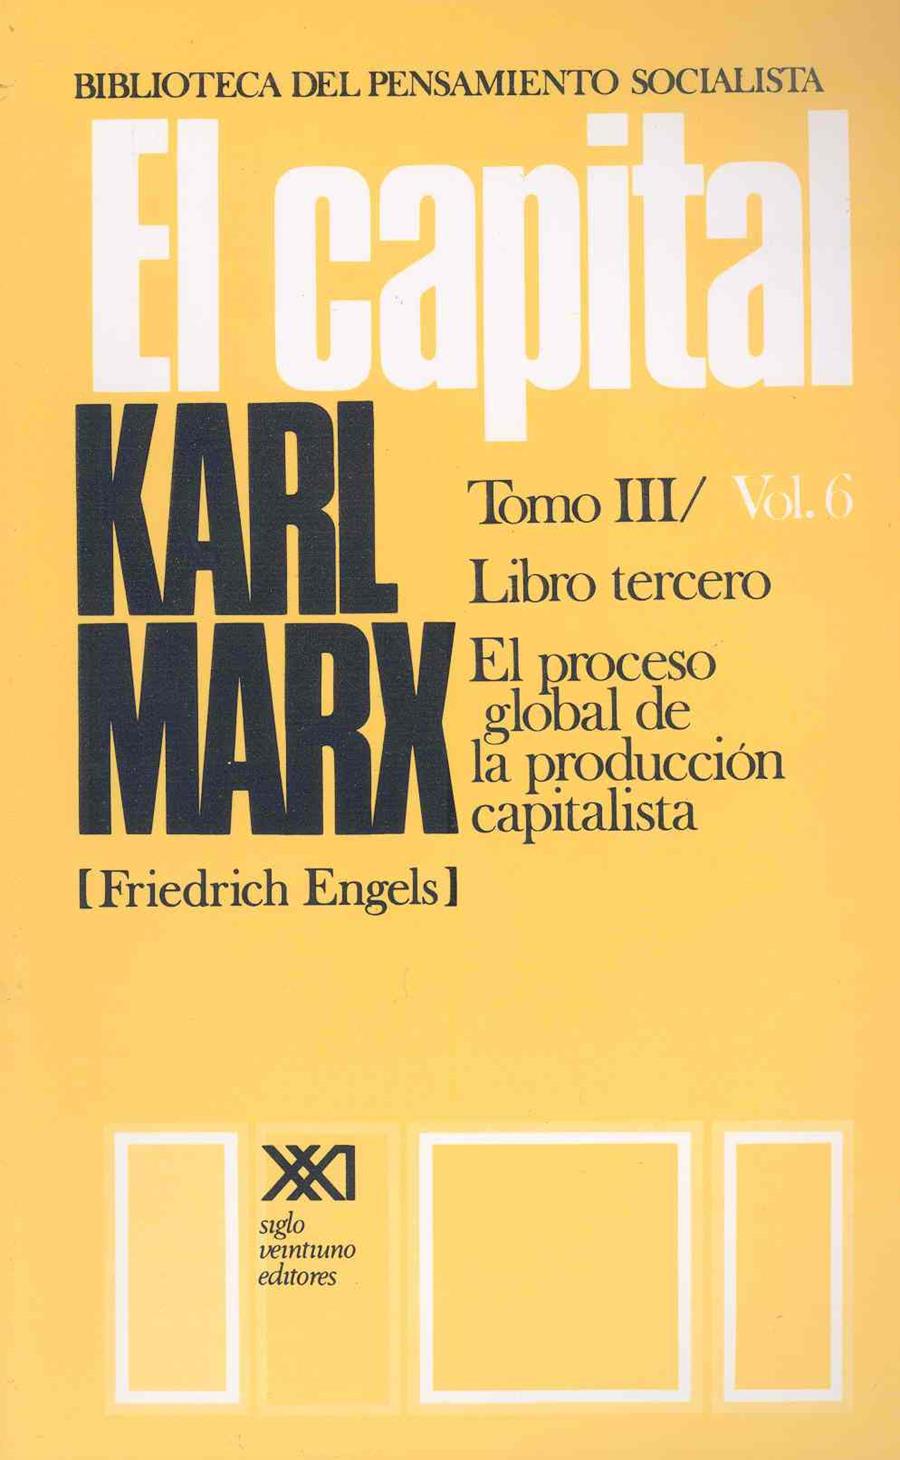 El Capital, vol. 6 | Marx, Karl